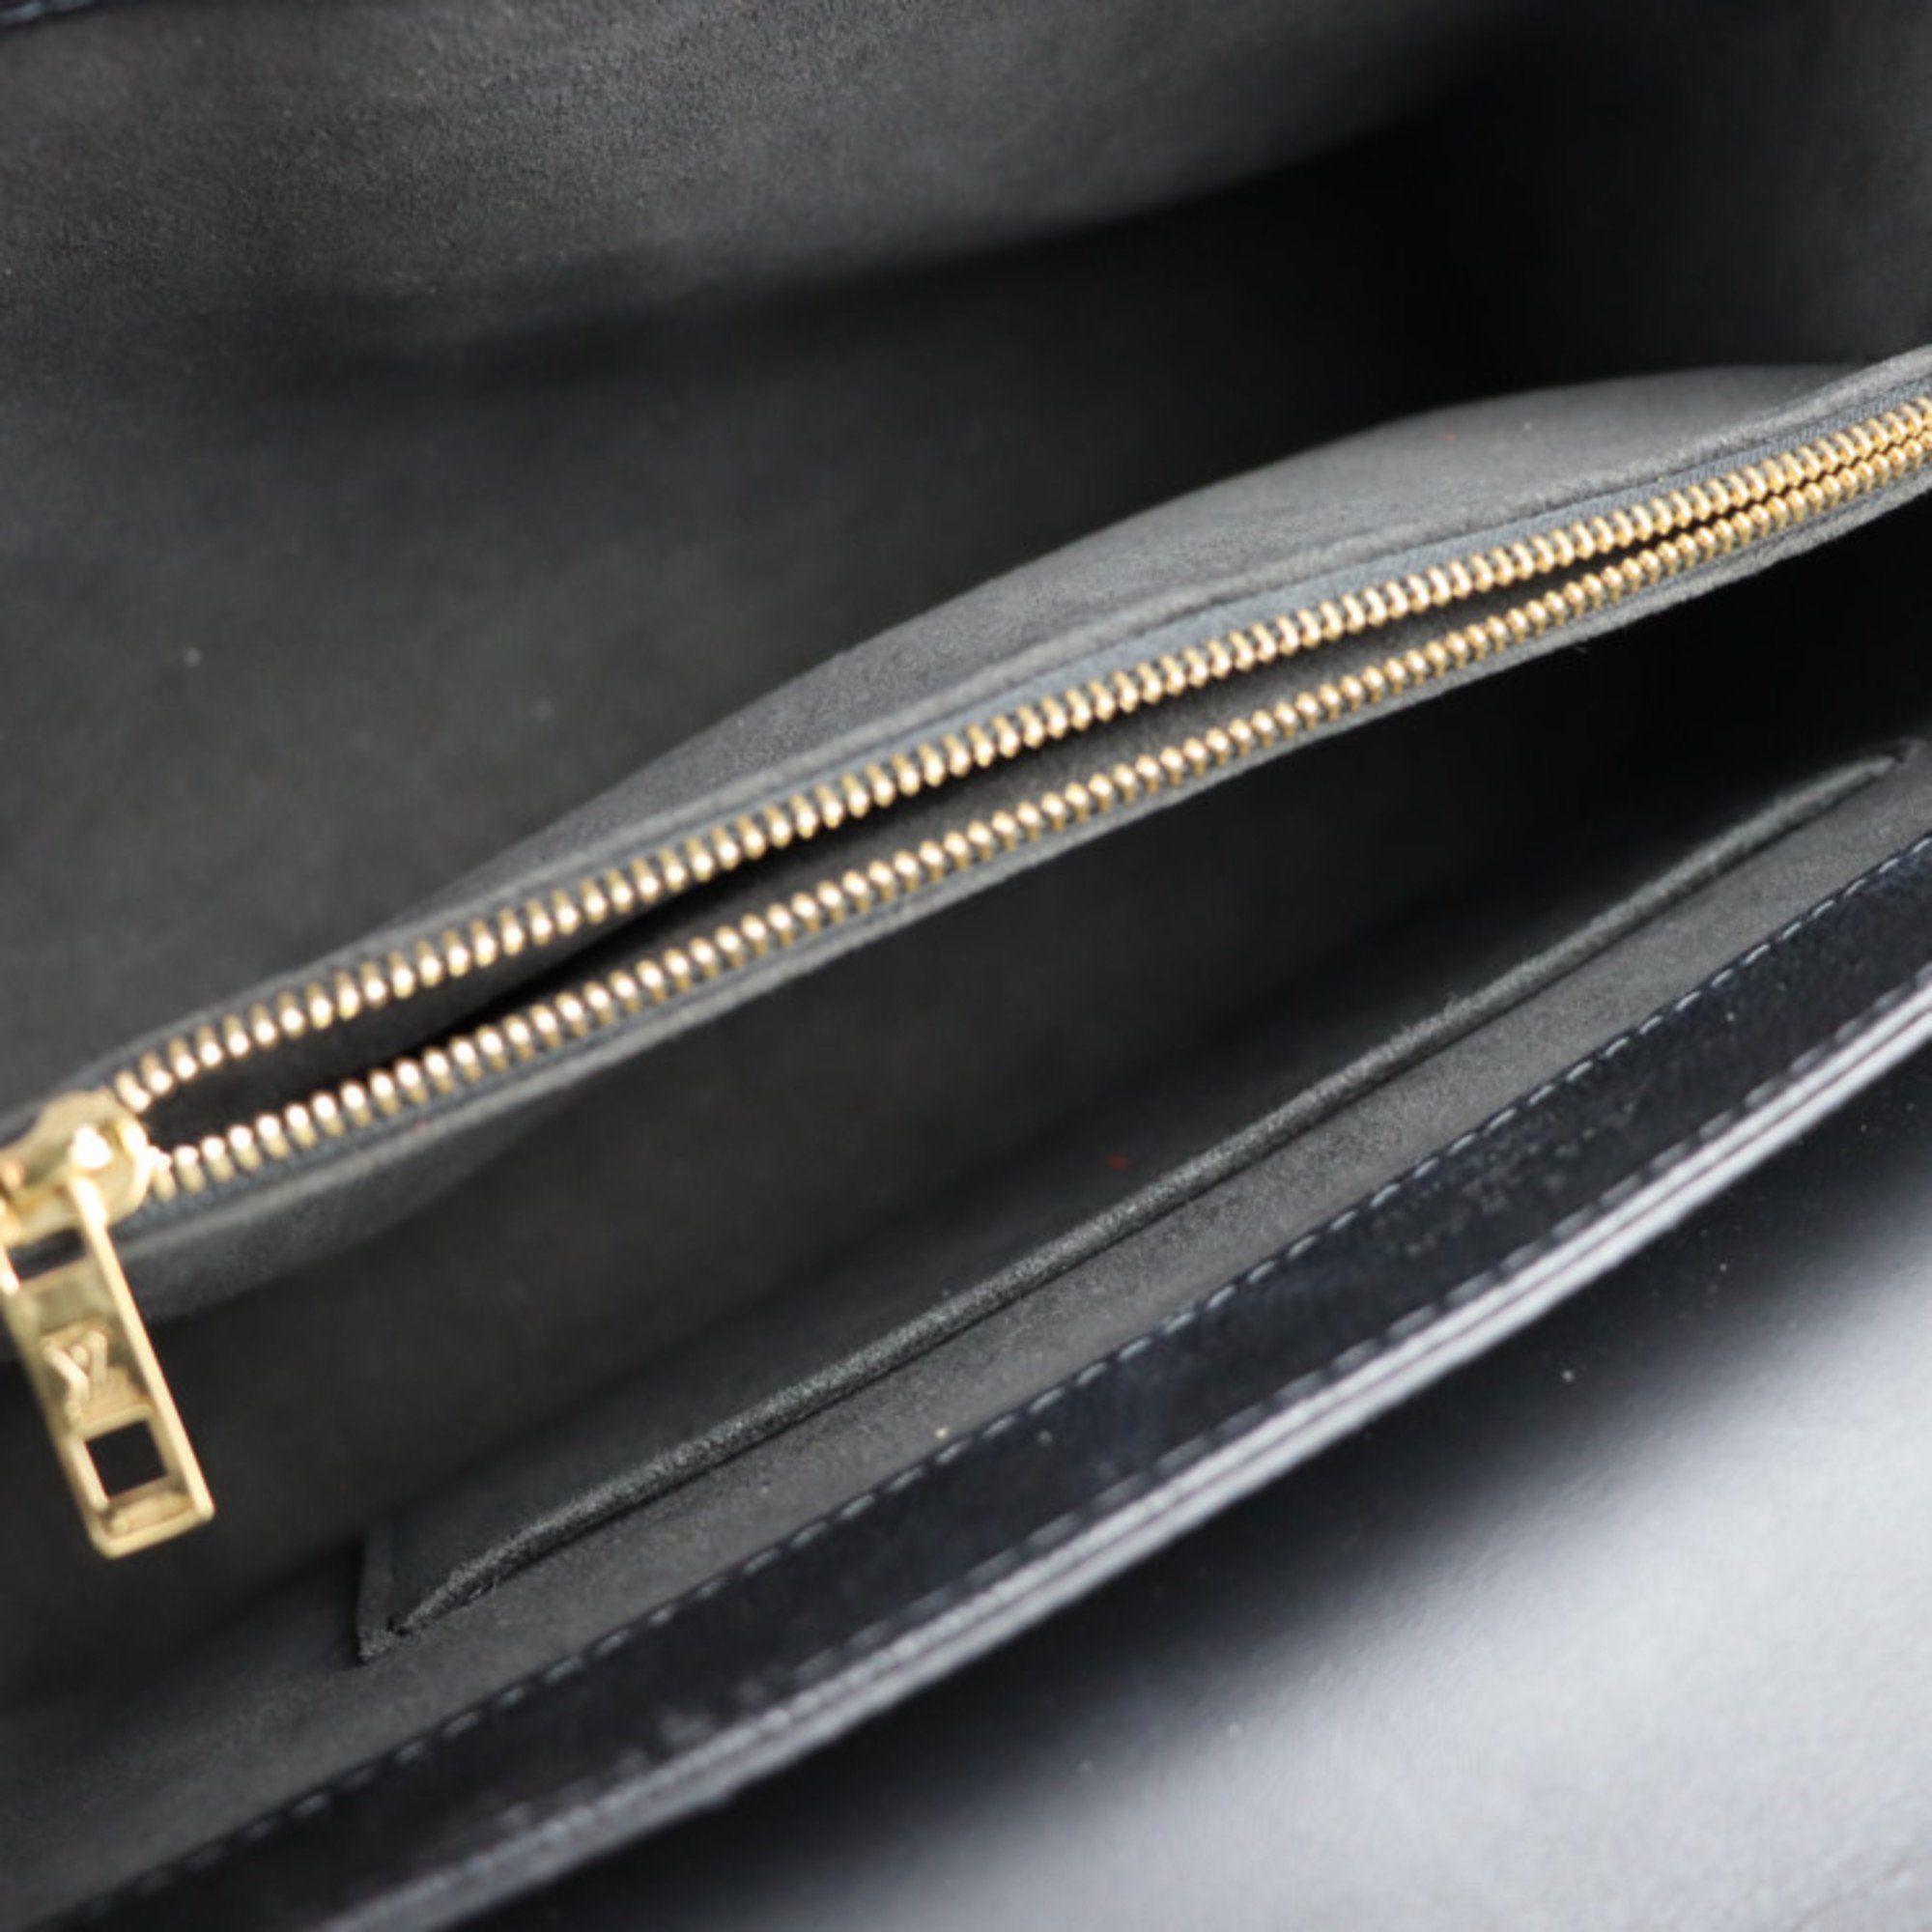 LOUIS VUITTON Louis Vuitton Verry One Handle Bag Handbag M51989 Leather Monogram Shadow Noir 2WAY Shoulder